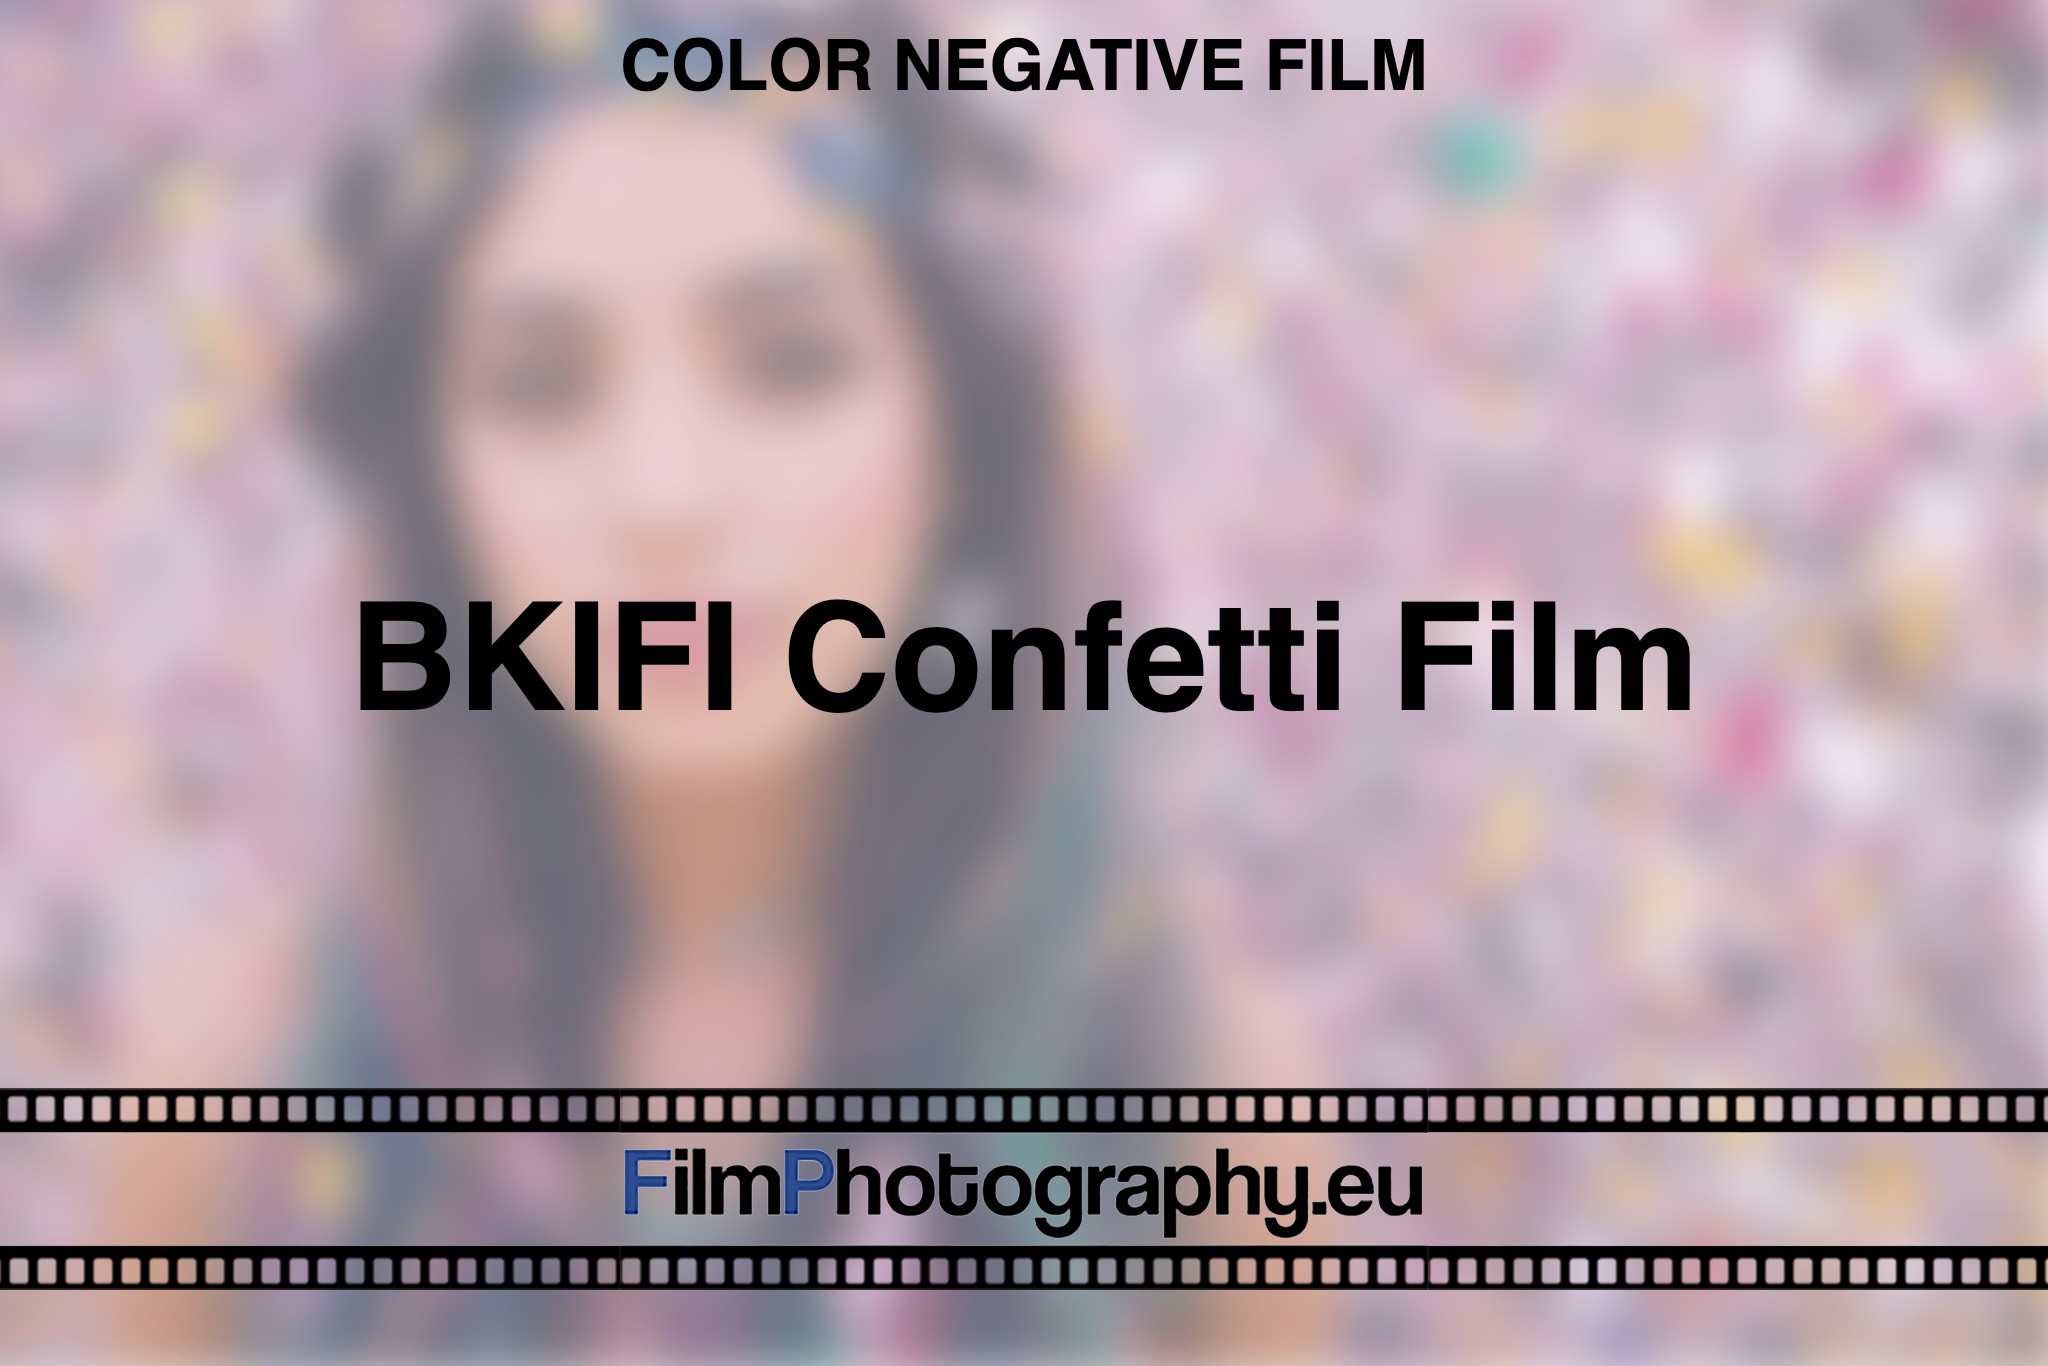 BKIFI-Confetti-Film-Color-negative-film-bnv